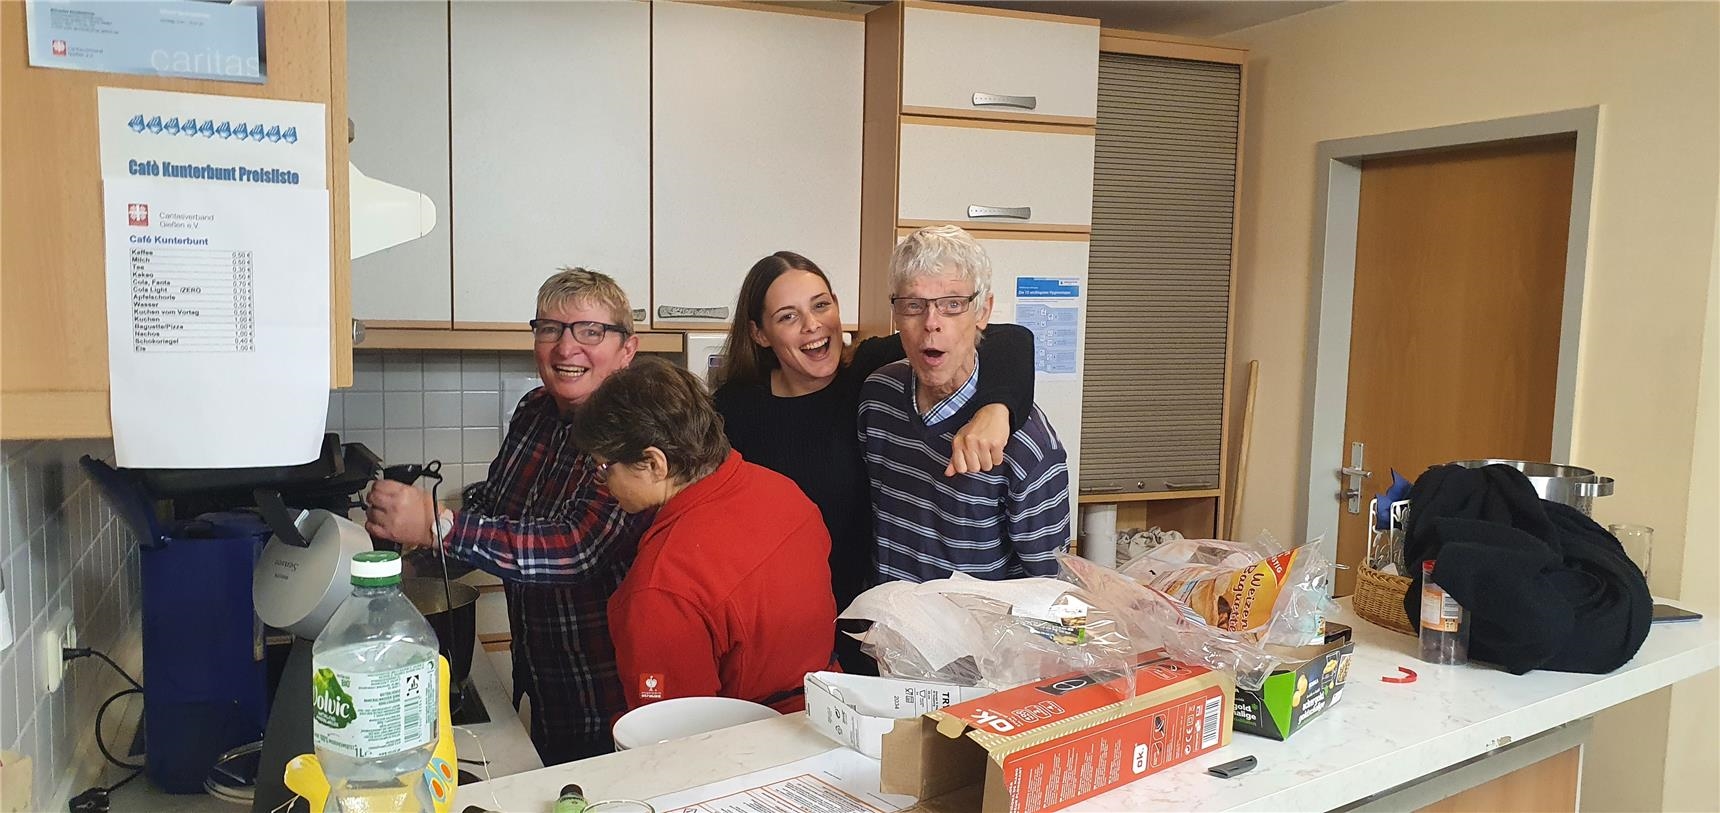 Lachende Menschen in einer Küche (Quelle: Caritasverband Gießen)